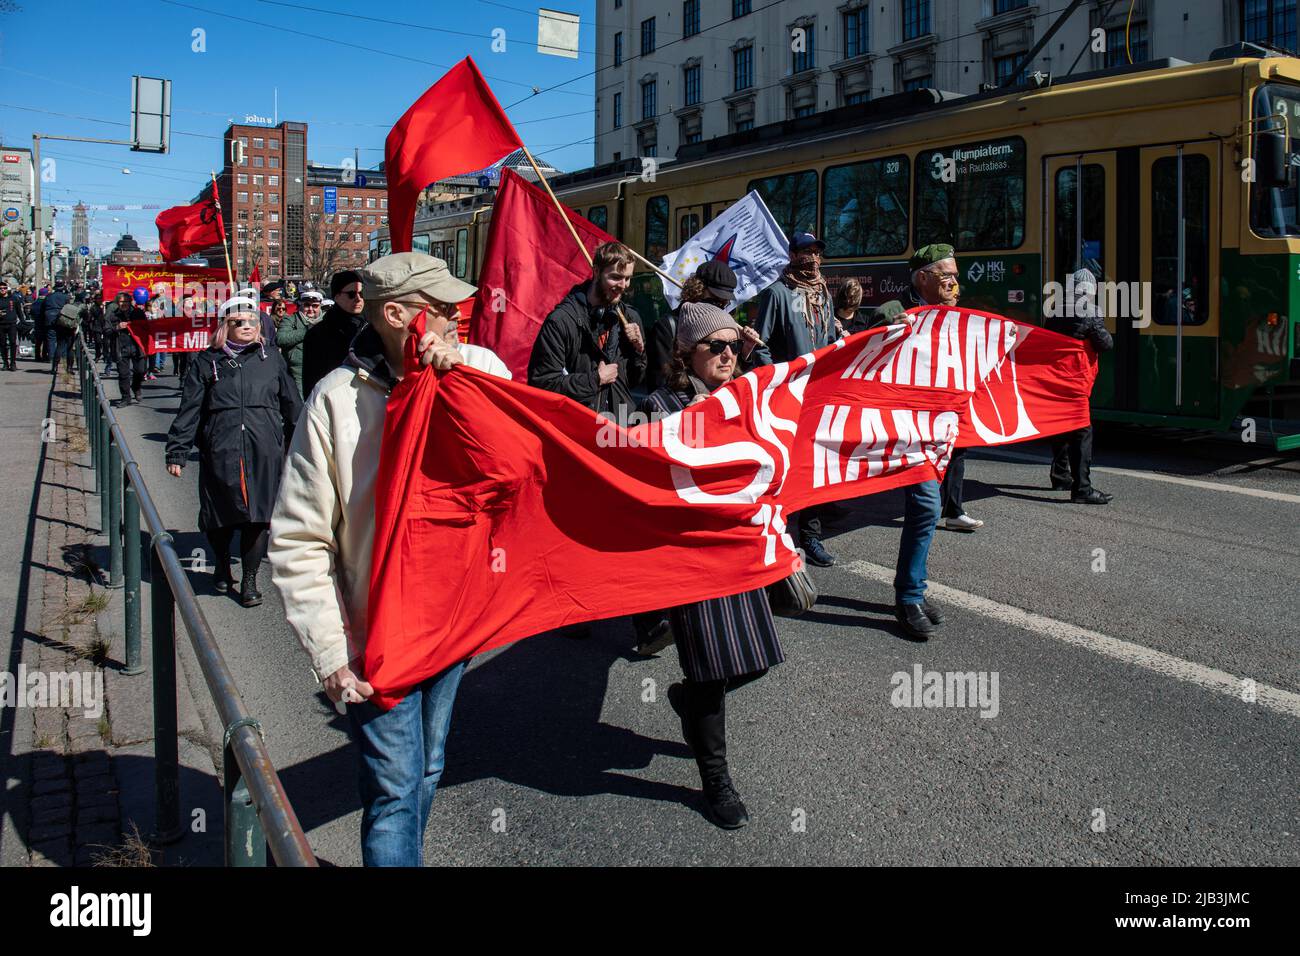 Menschen, die ein rotes Banner in der Hand halten und an der sozialistischen Parade zum 1. Mai beim Internationalen Arbeitertag in Helsinki, Finnland, teilnehmen Stockfoto